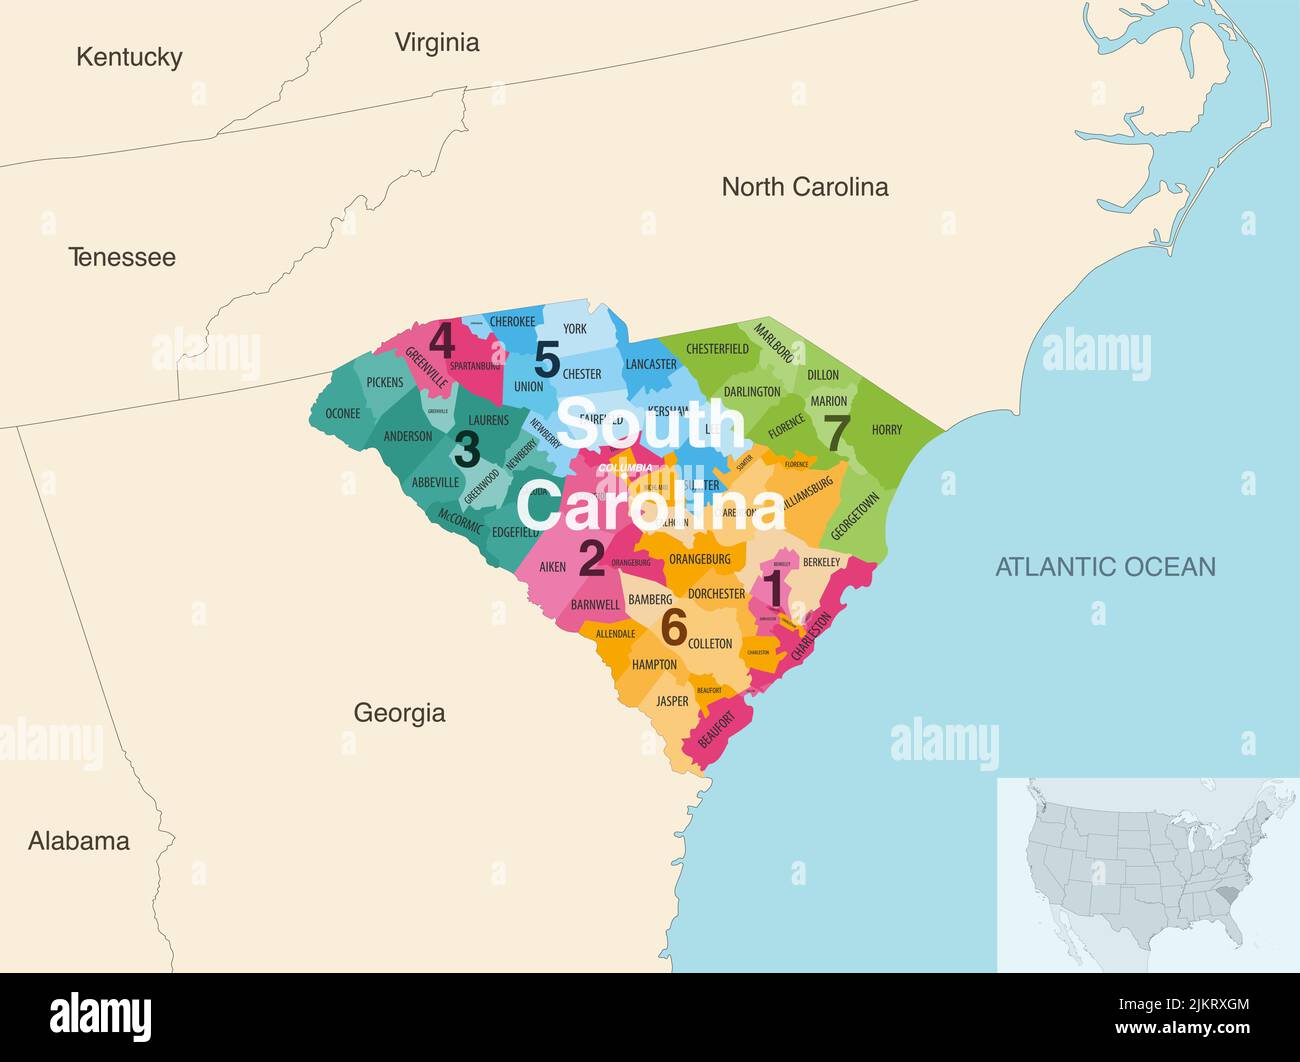 Les comtés de l'État de Caroline du Sud colorés par les districts du Congrès carte vectorielle avec les États et les terrotories voisins Illustration de Vecteur